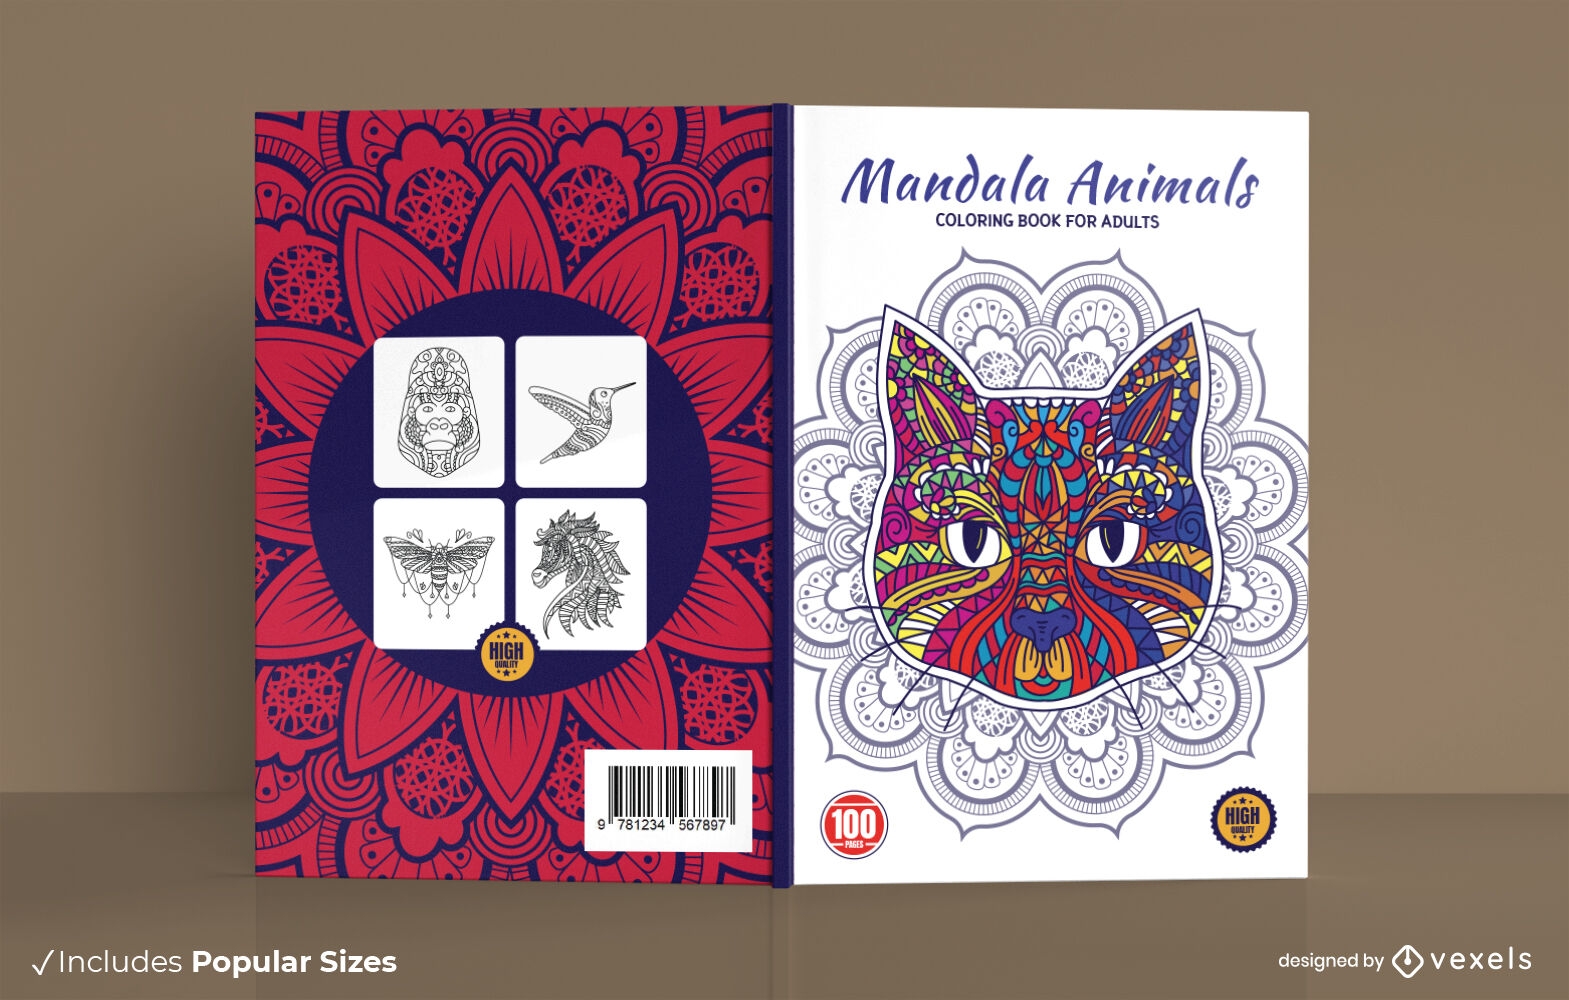 Mandala animal coloring book cover design